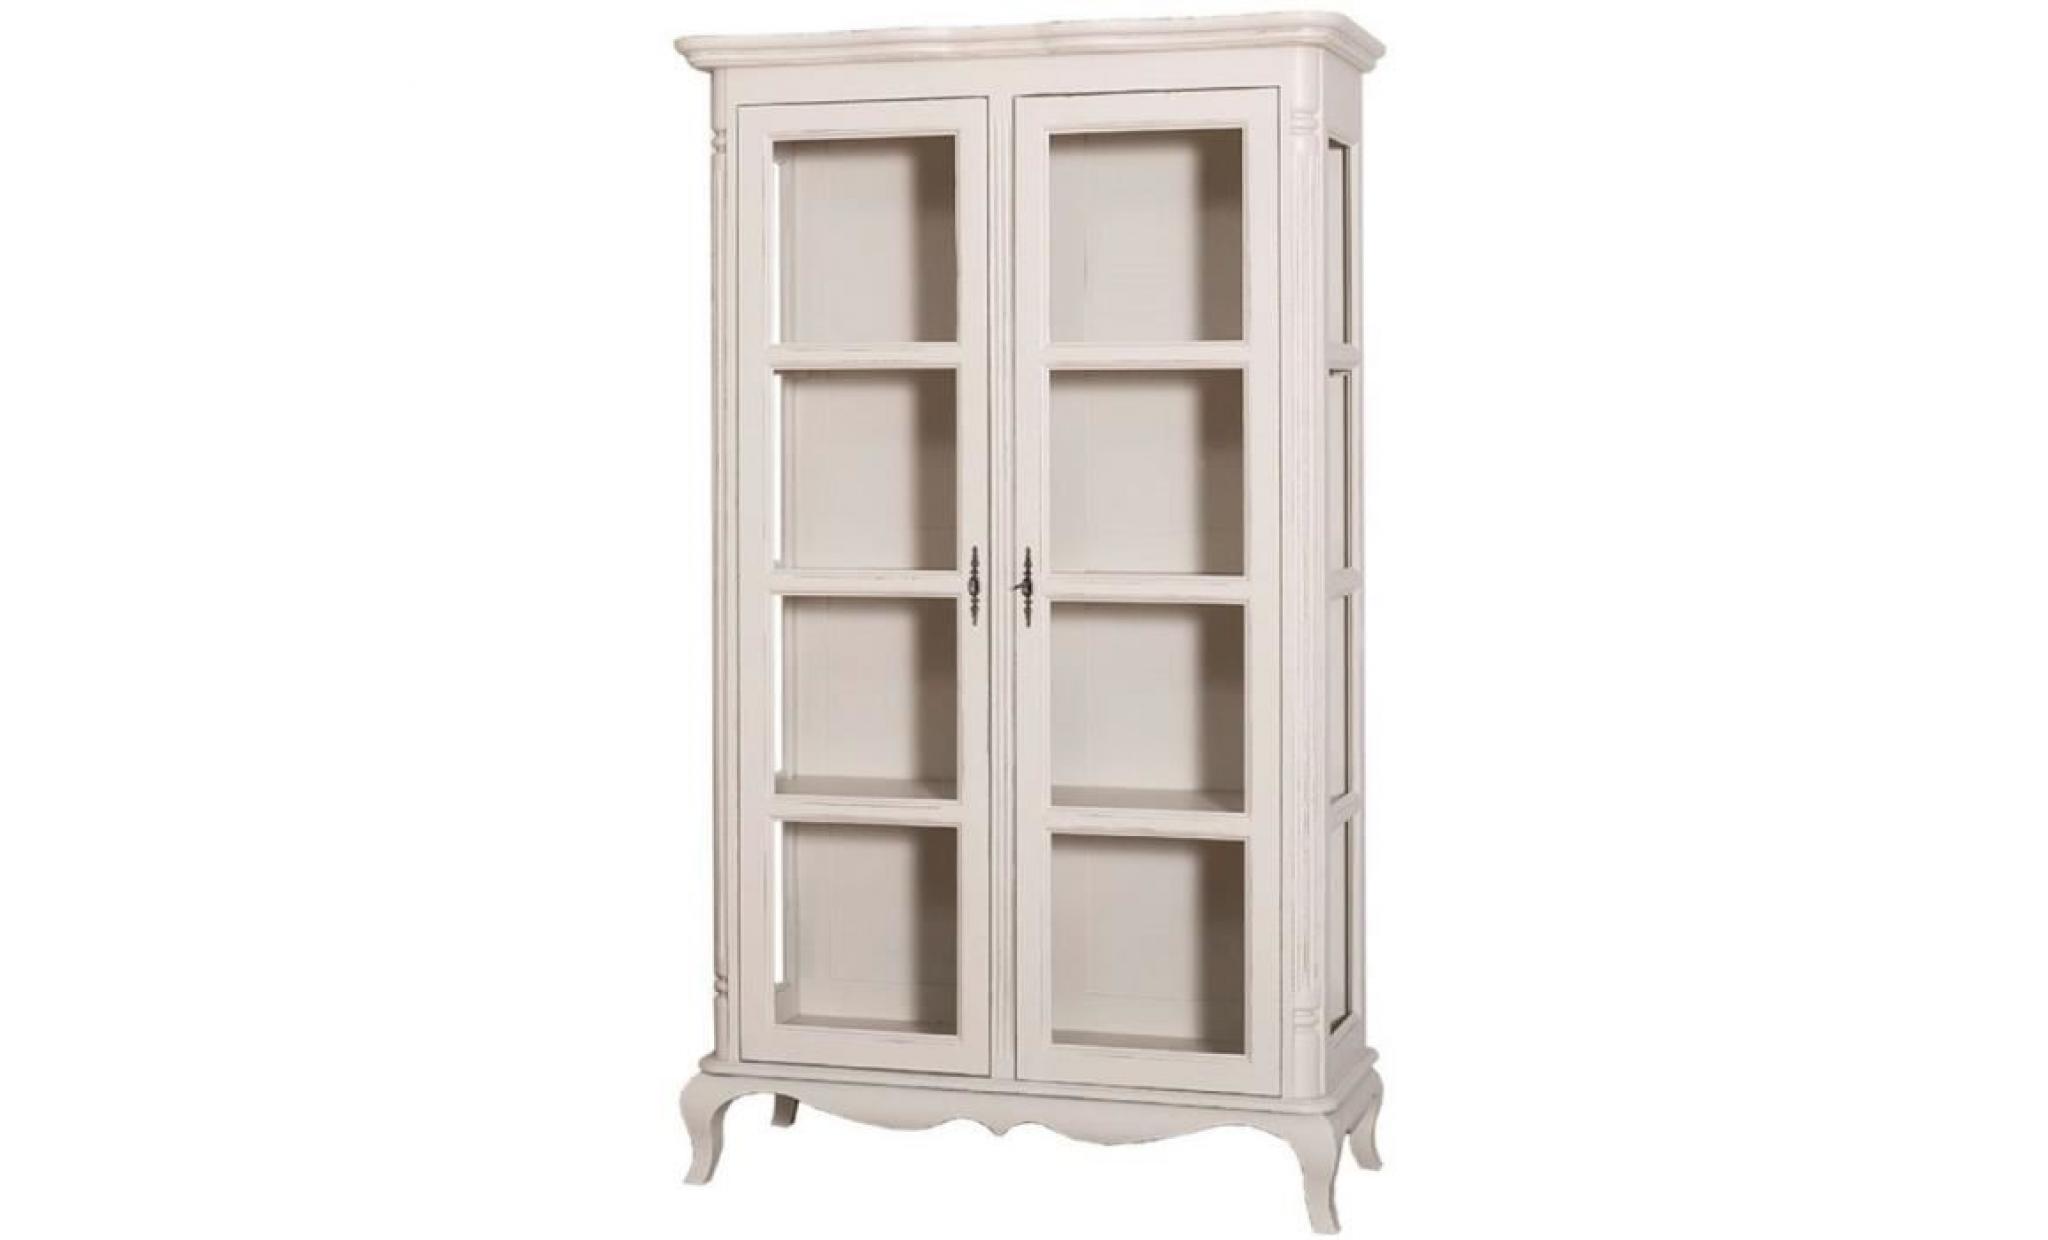 casa padrino armoire vitrine de style campagnard gris clair antique 112 x 49 x h. 190 cm   armoire de salon en bois massif avec 2 pas cher